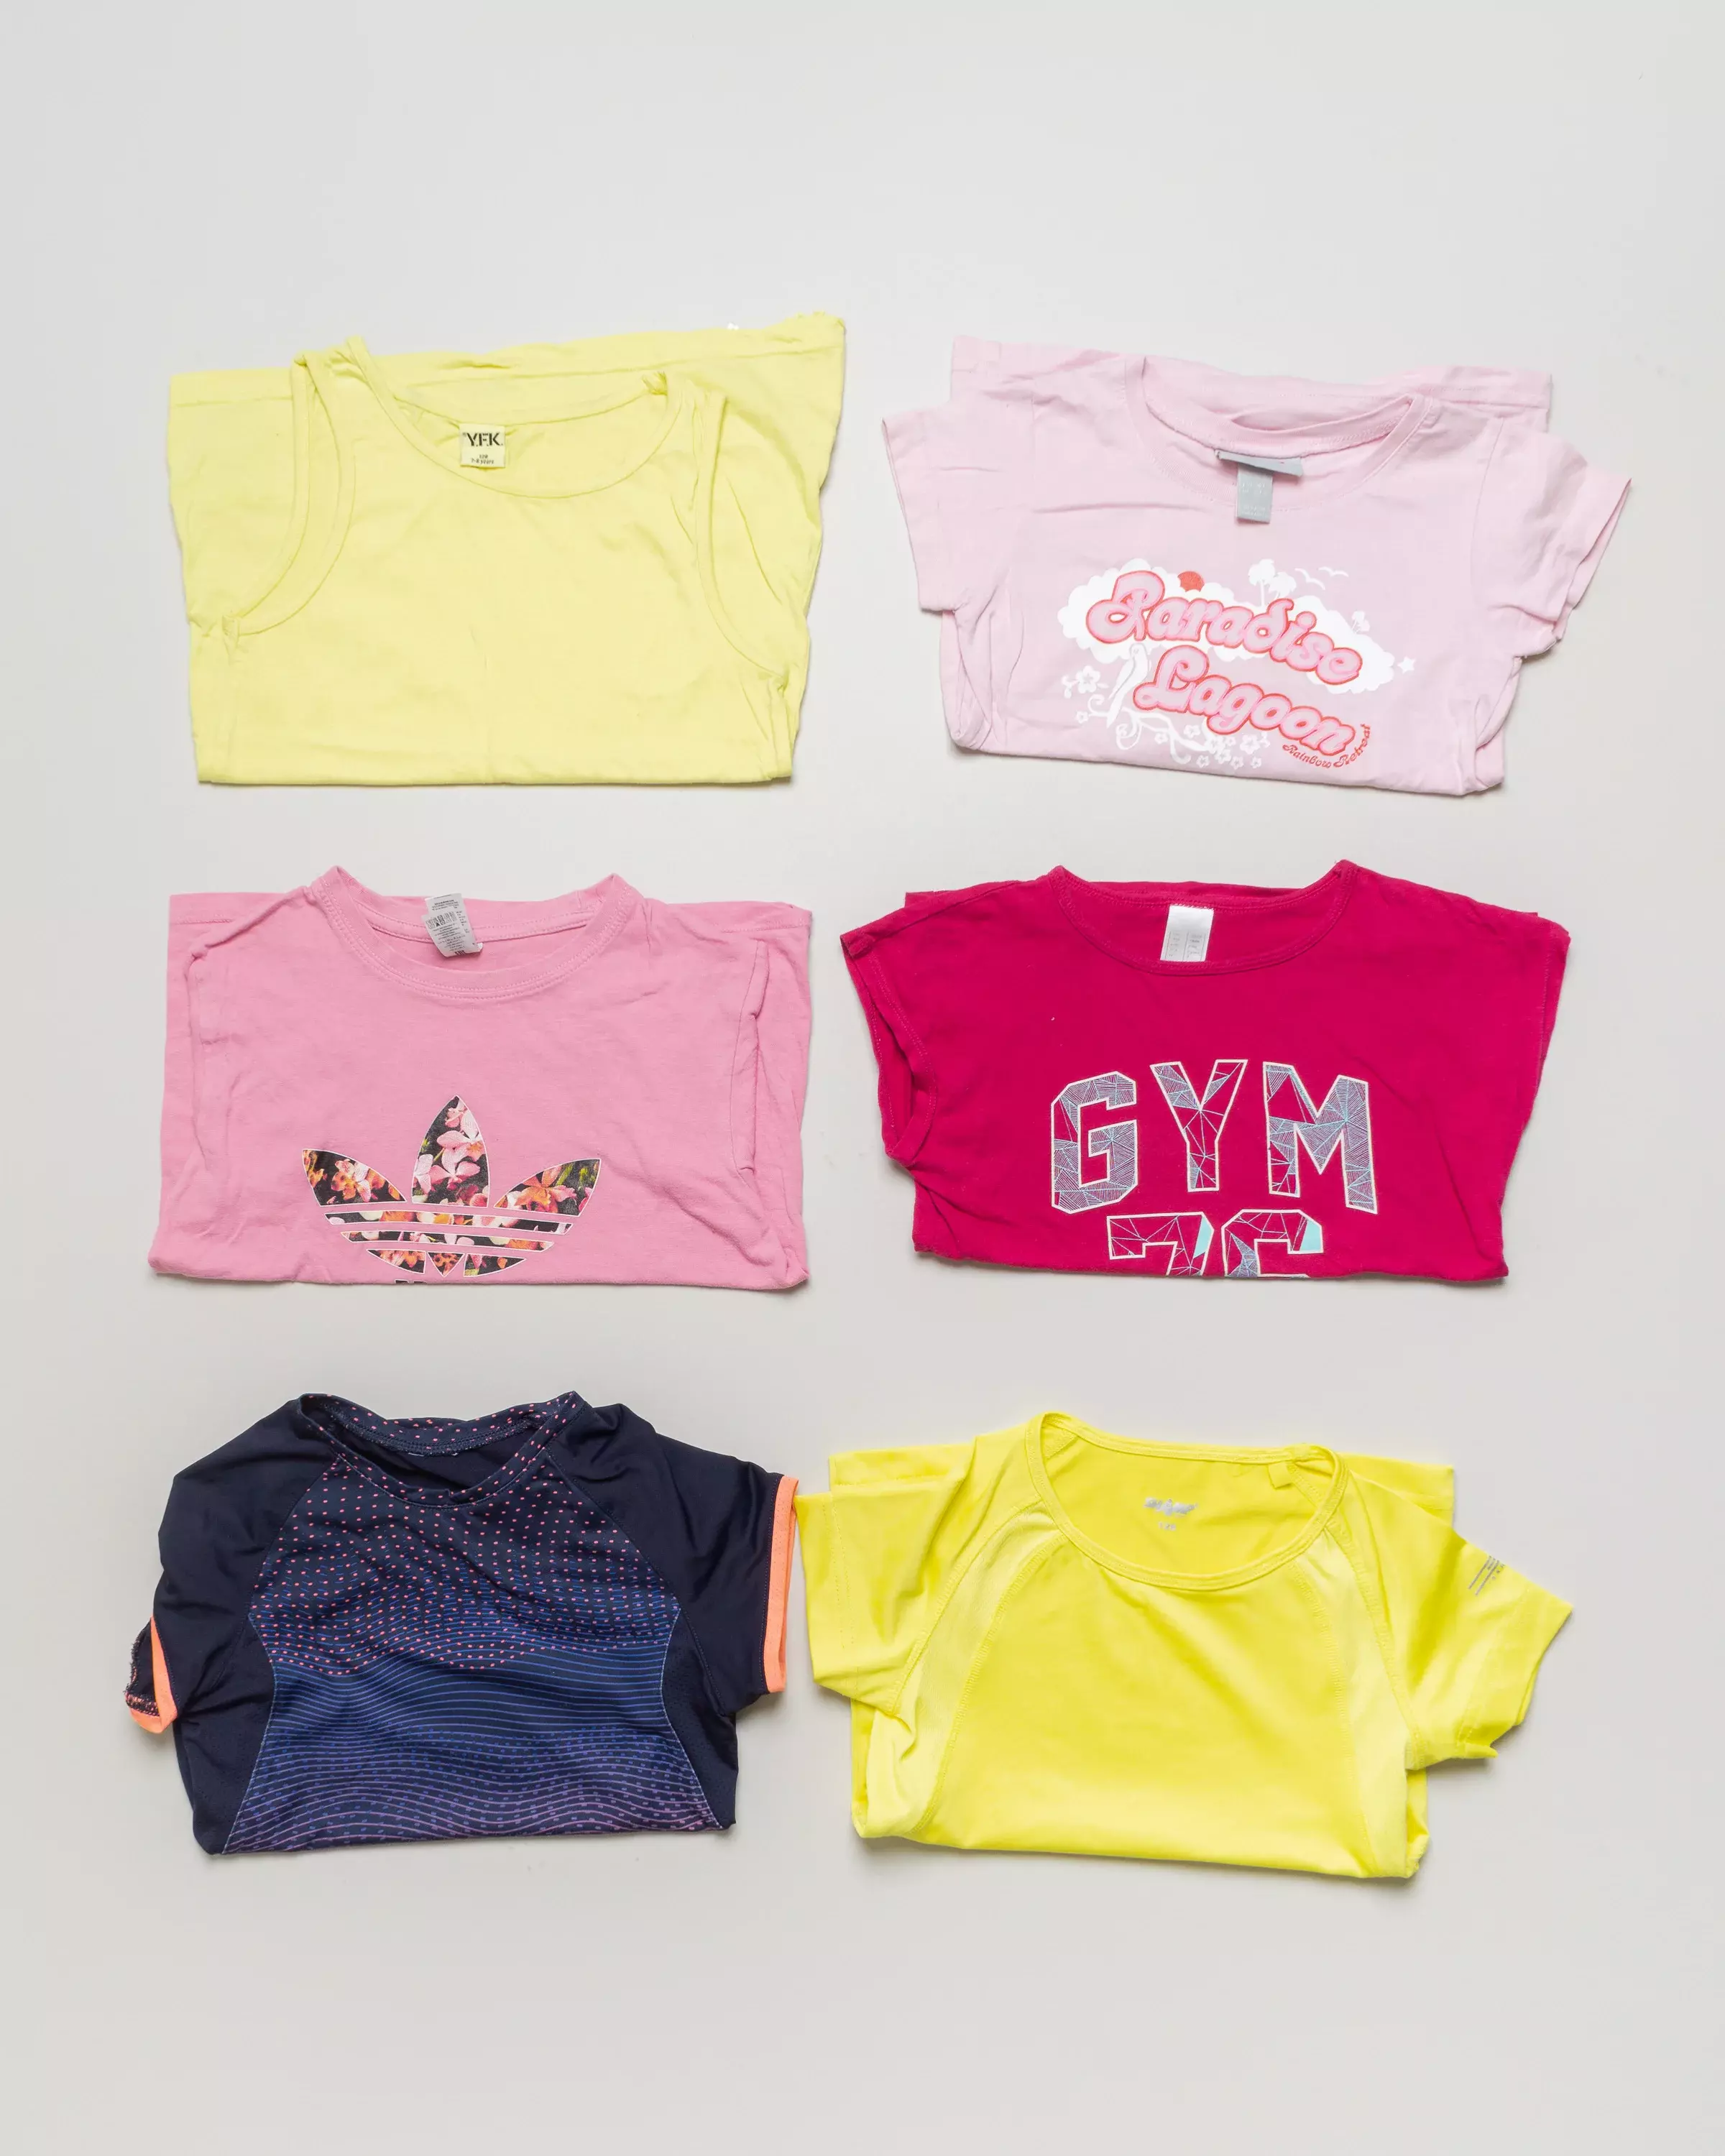 6 T-Shirts Gr. 128 – Adidas gelb GYM bunt Sportlich Sommer Top Mädchen Set Pack